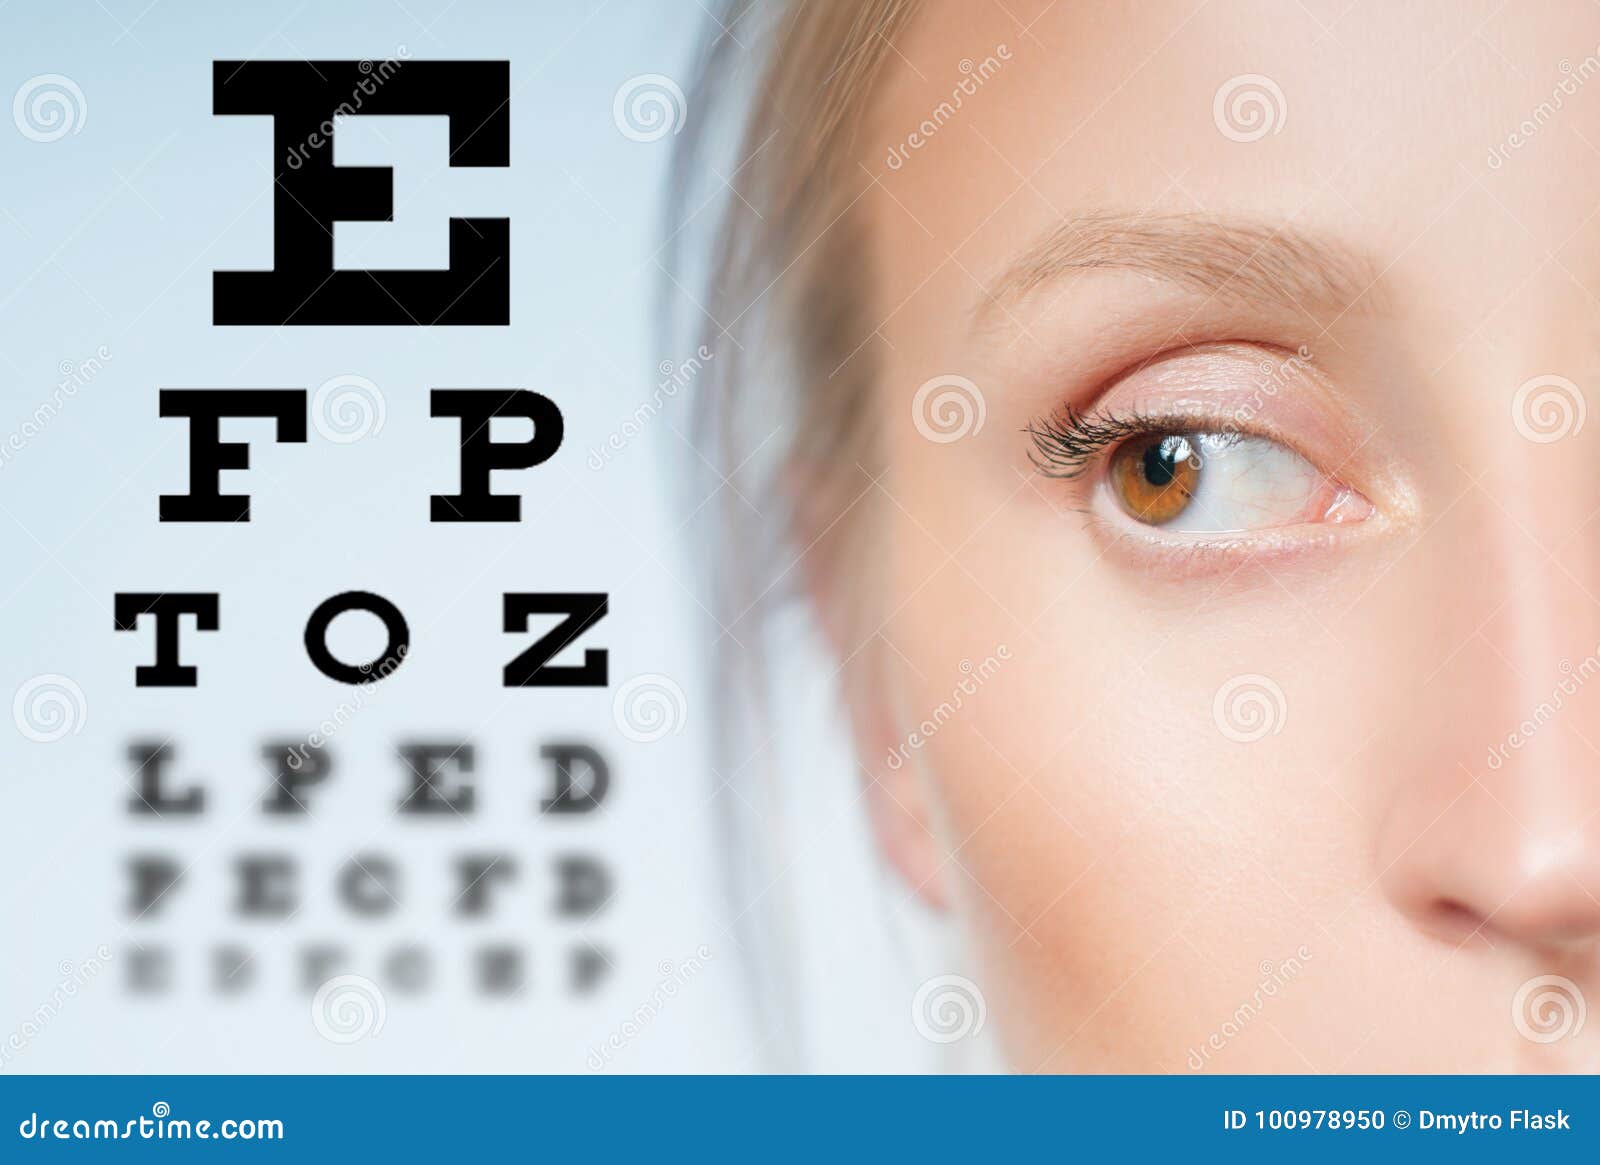 Глаз и зрение тест. Снижение зрения. Глаз на фоне таблицы для зрение. Проверка зрения фото. Тест на зрение фото.